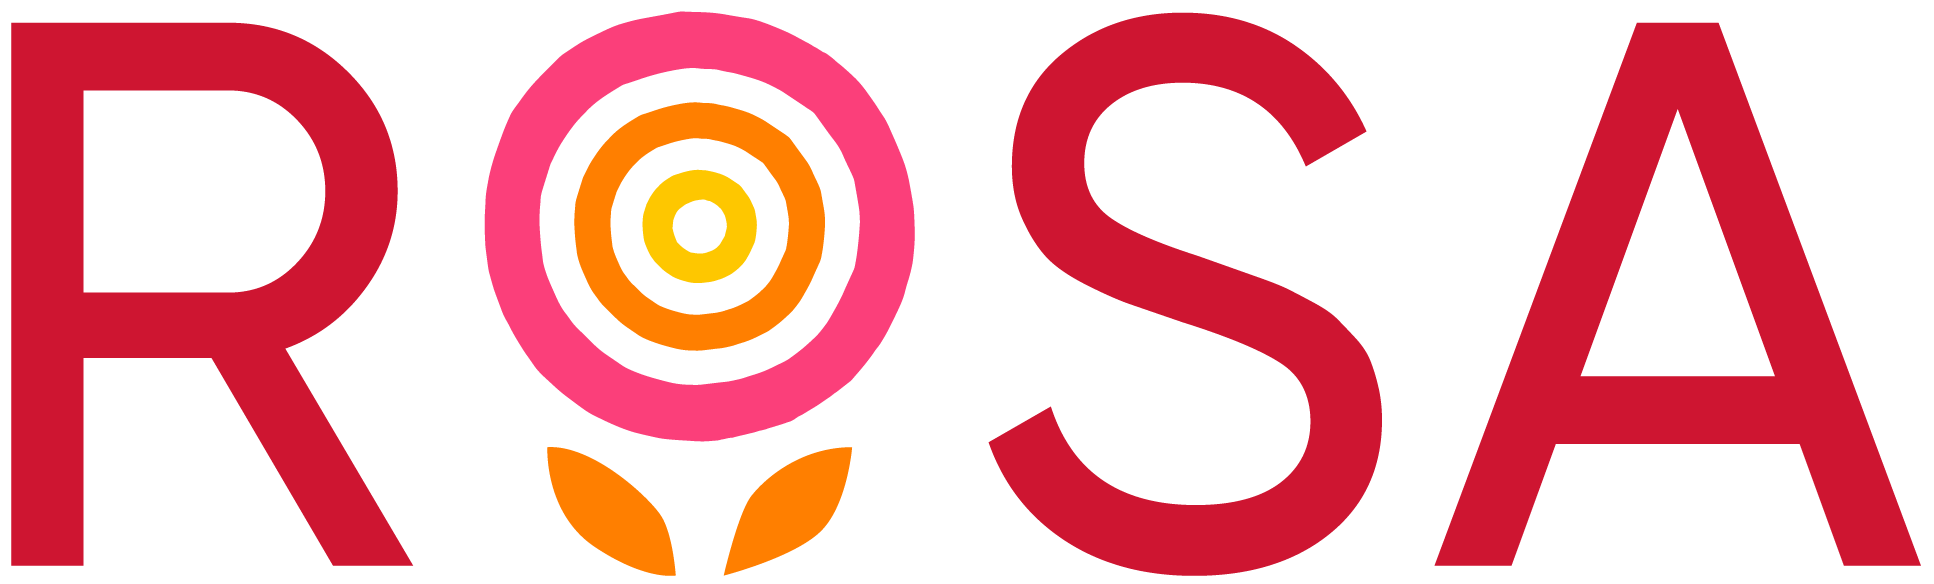 Rosa-logo-RGB_color-copy.png